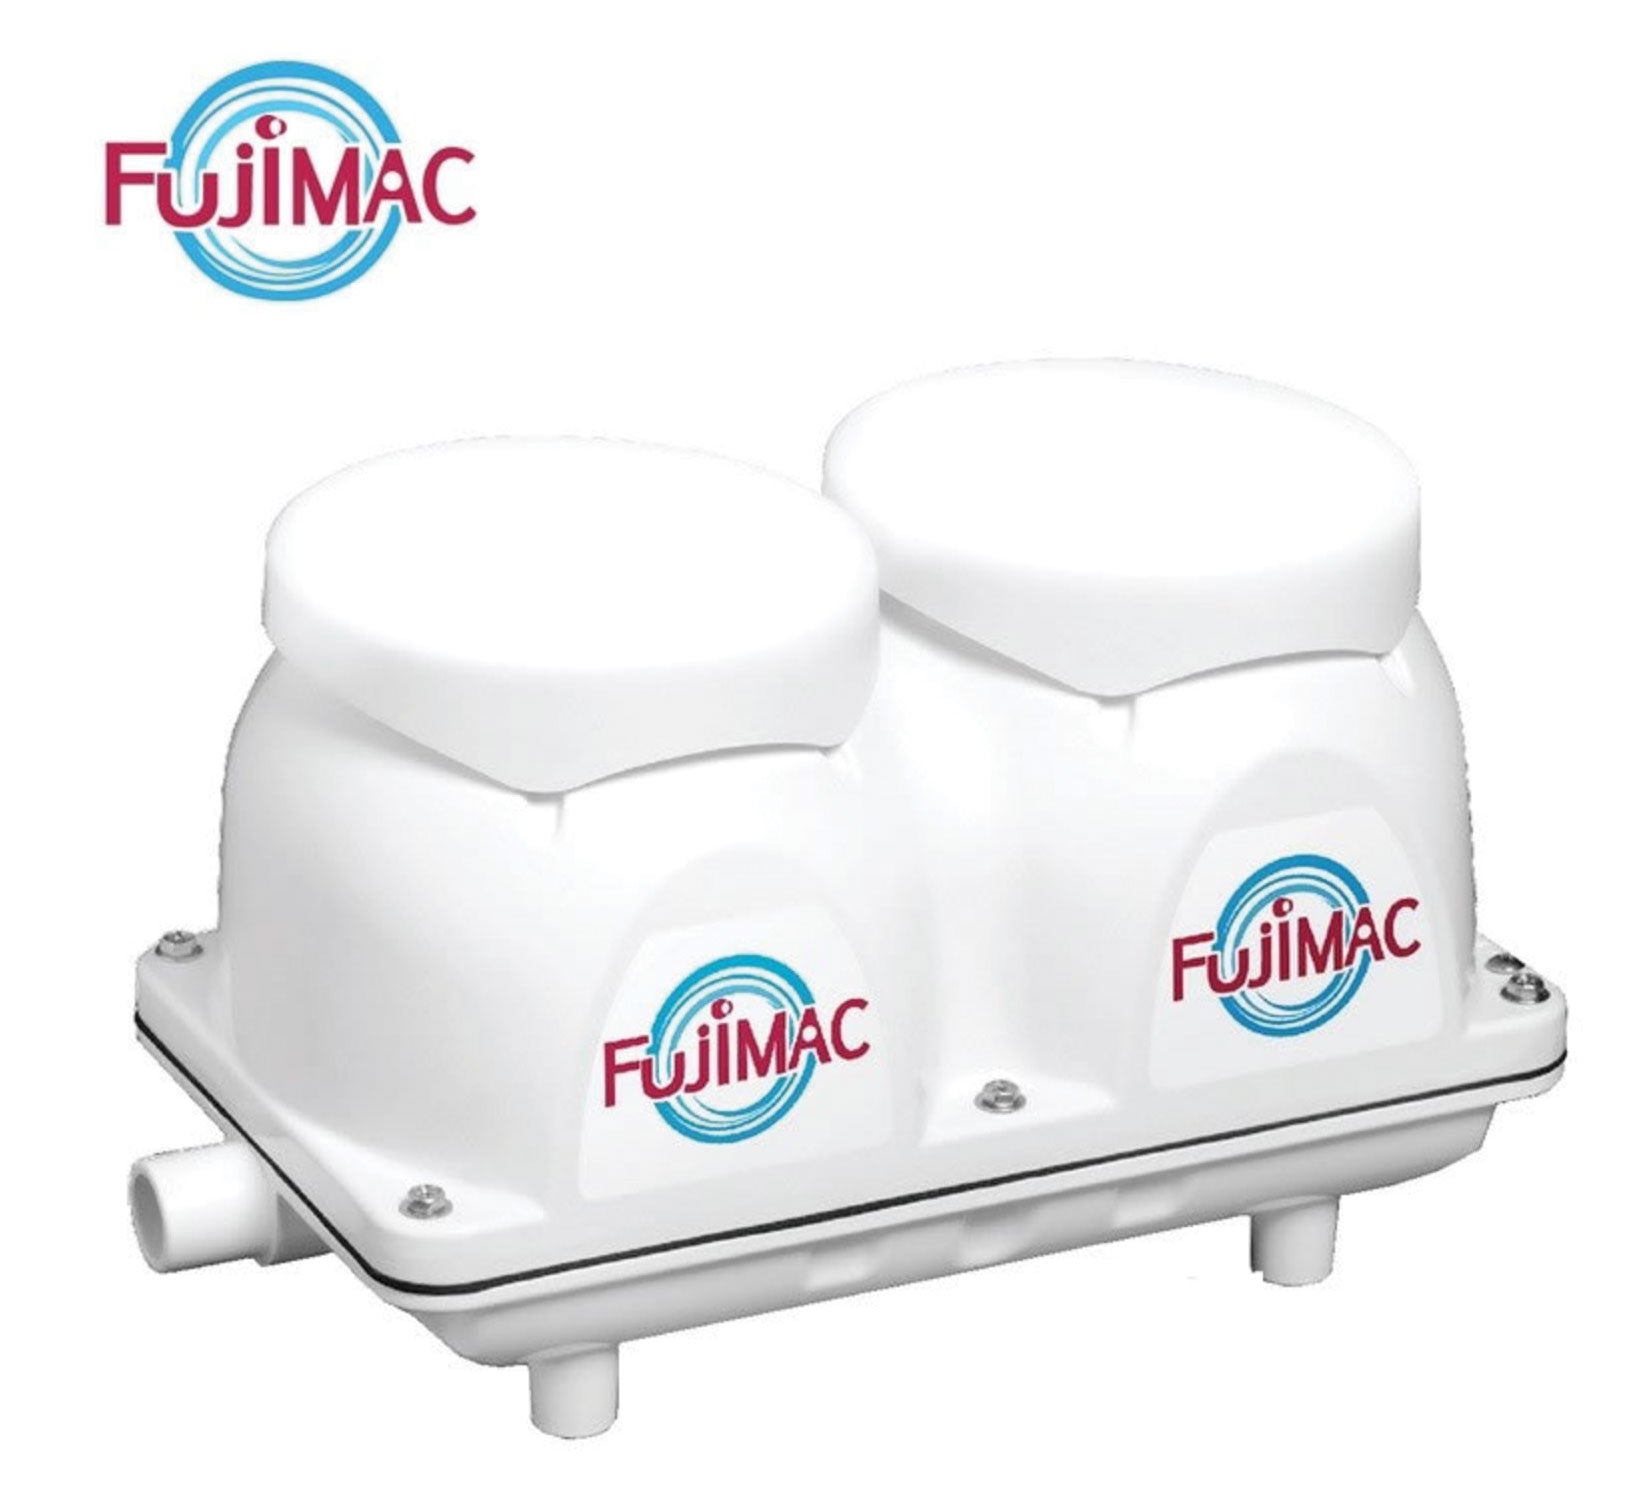 FUJIMAC 300 *UK* - SKS Wholesale